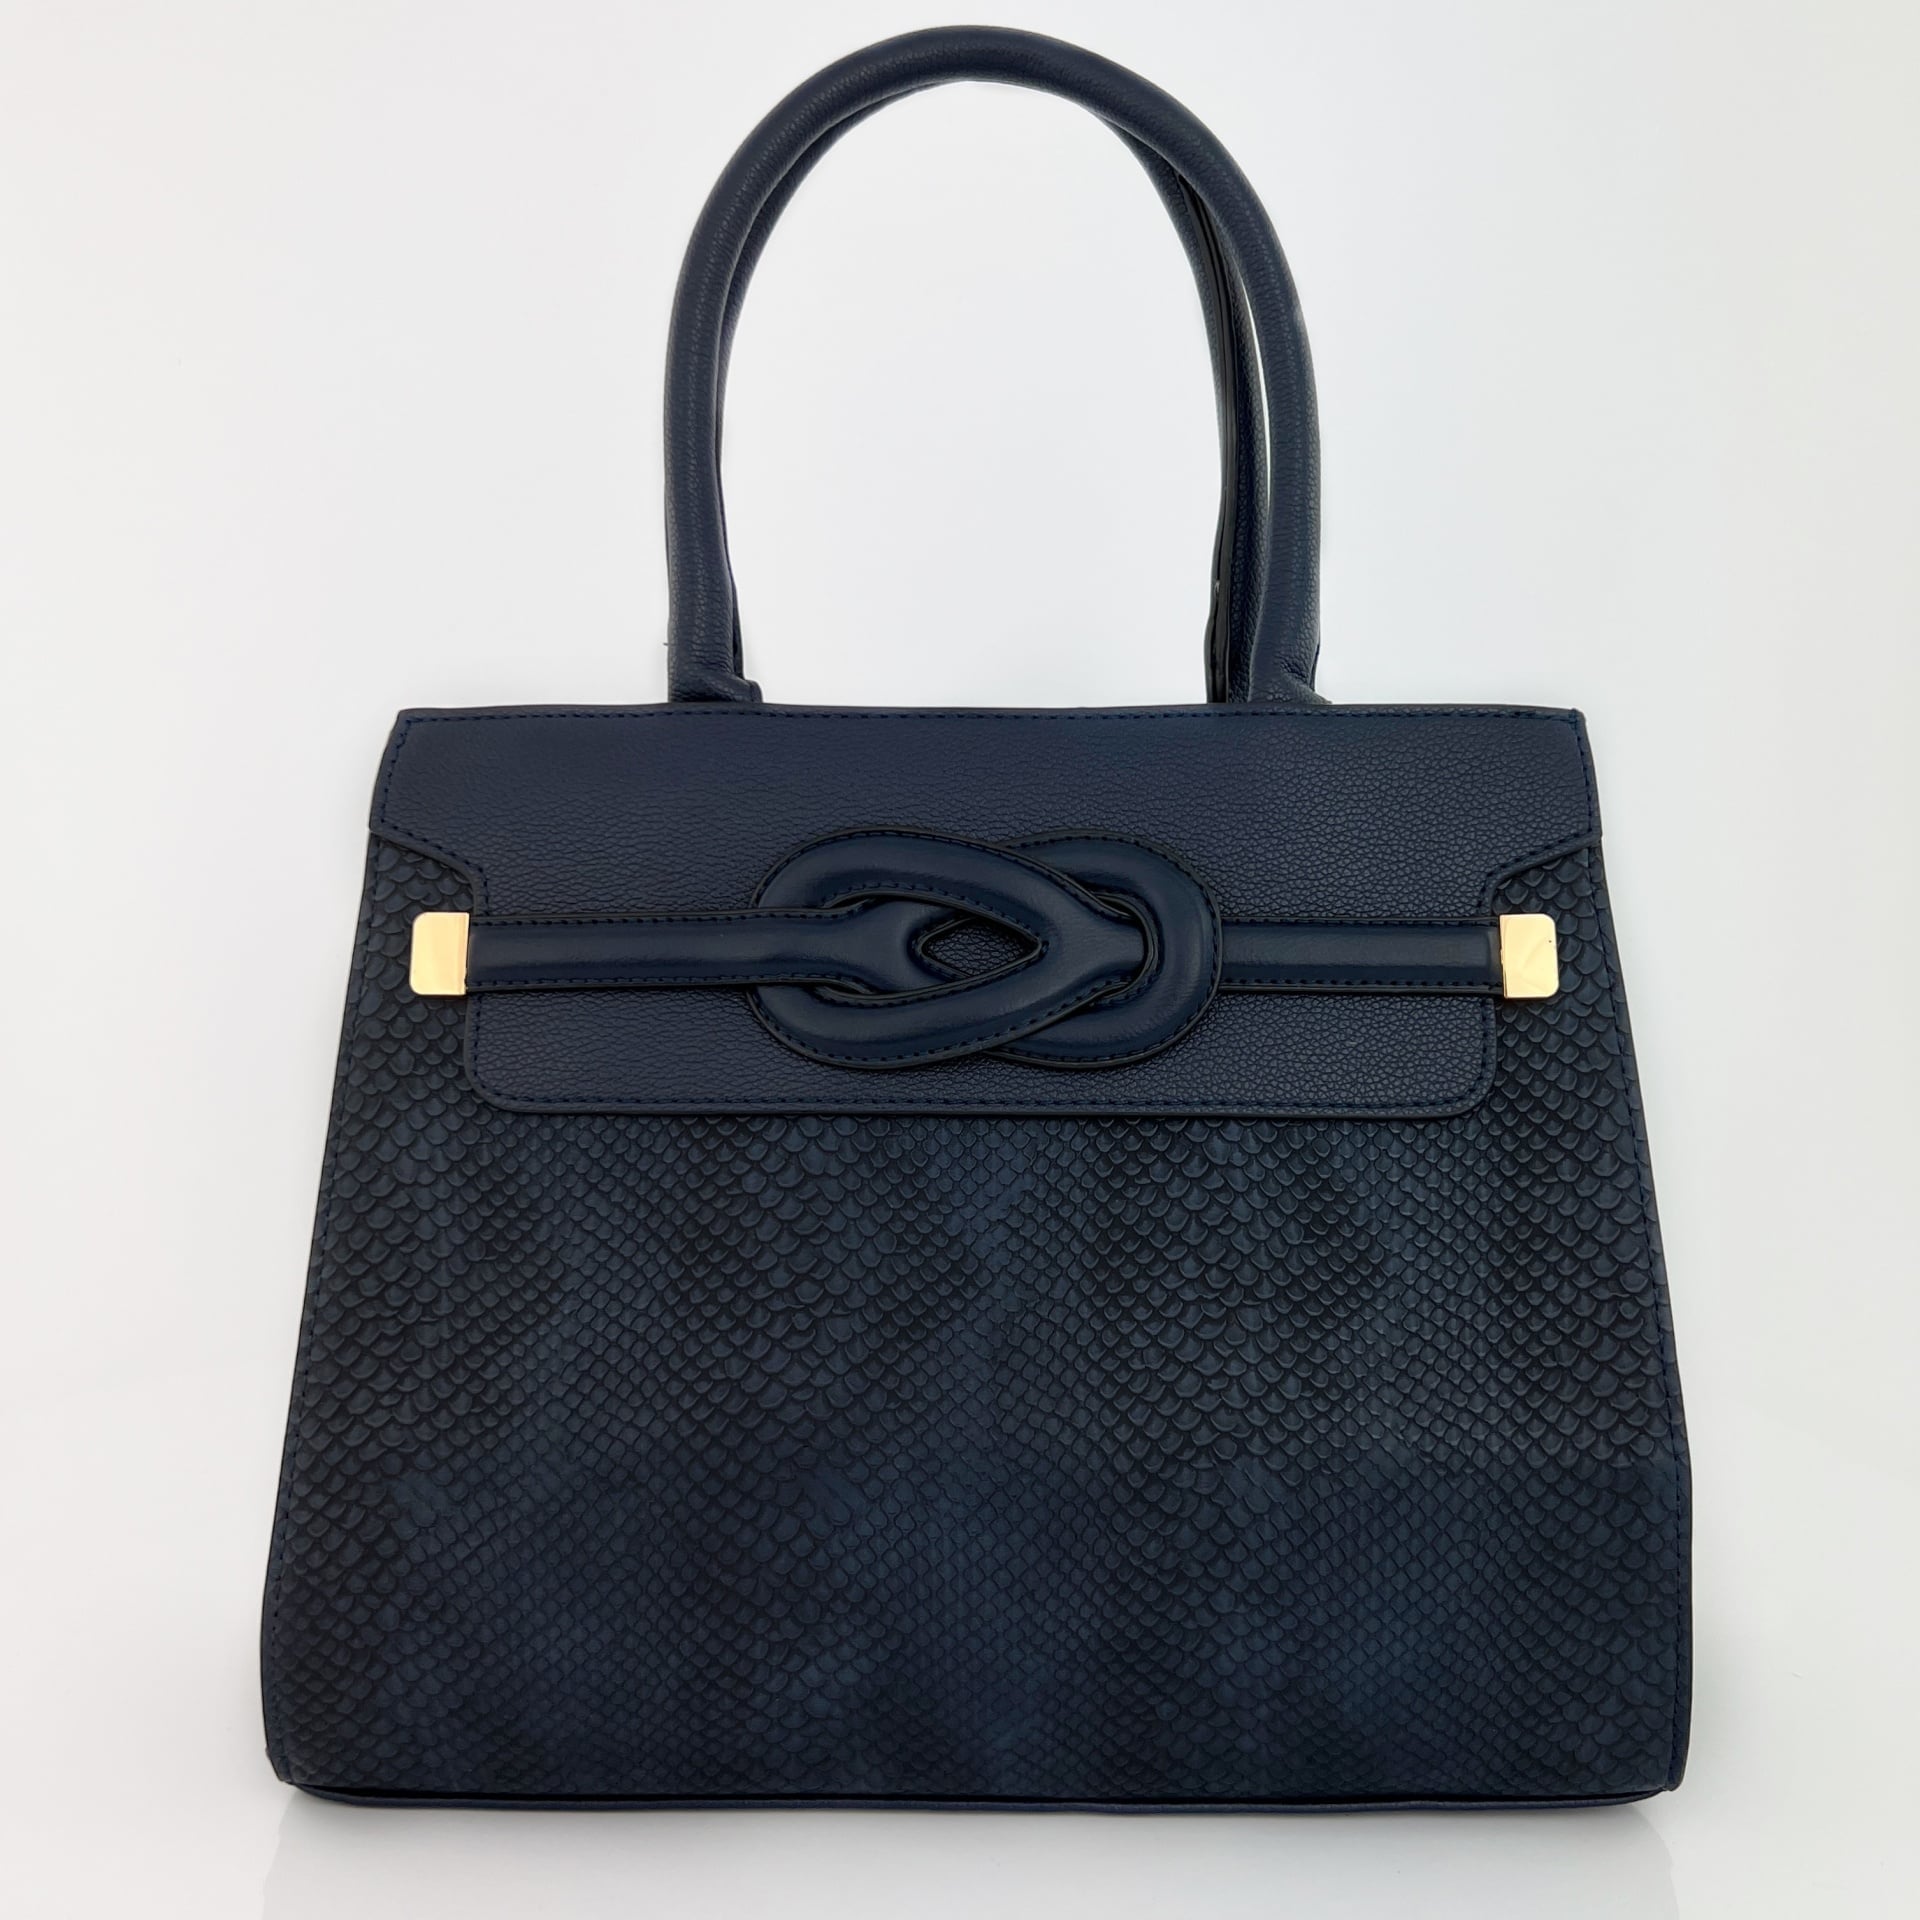  Ежедневна дамска чанта - тъмно синя